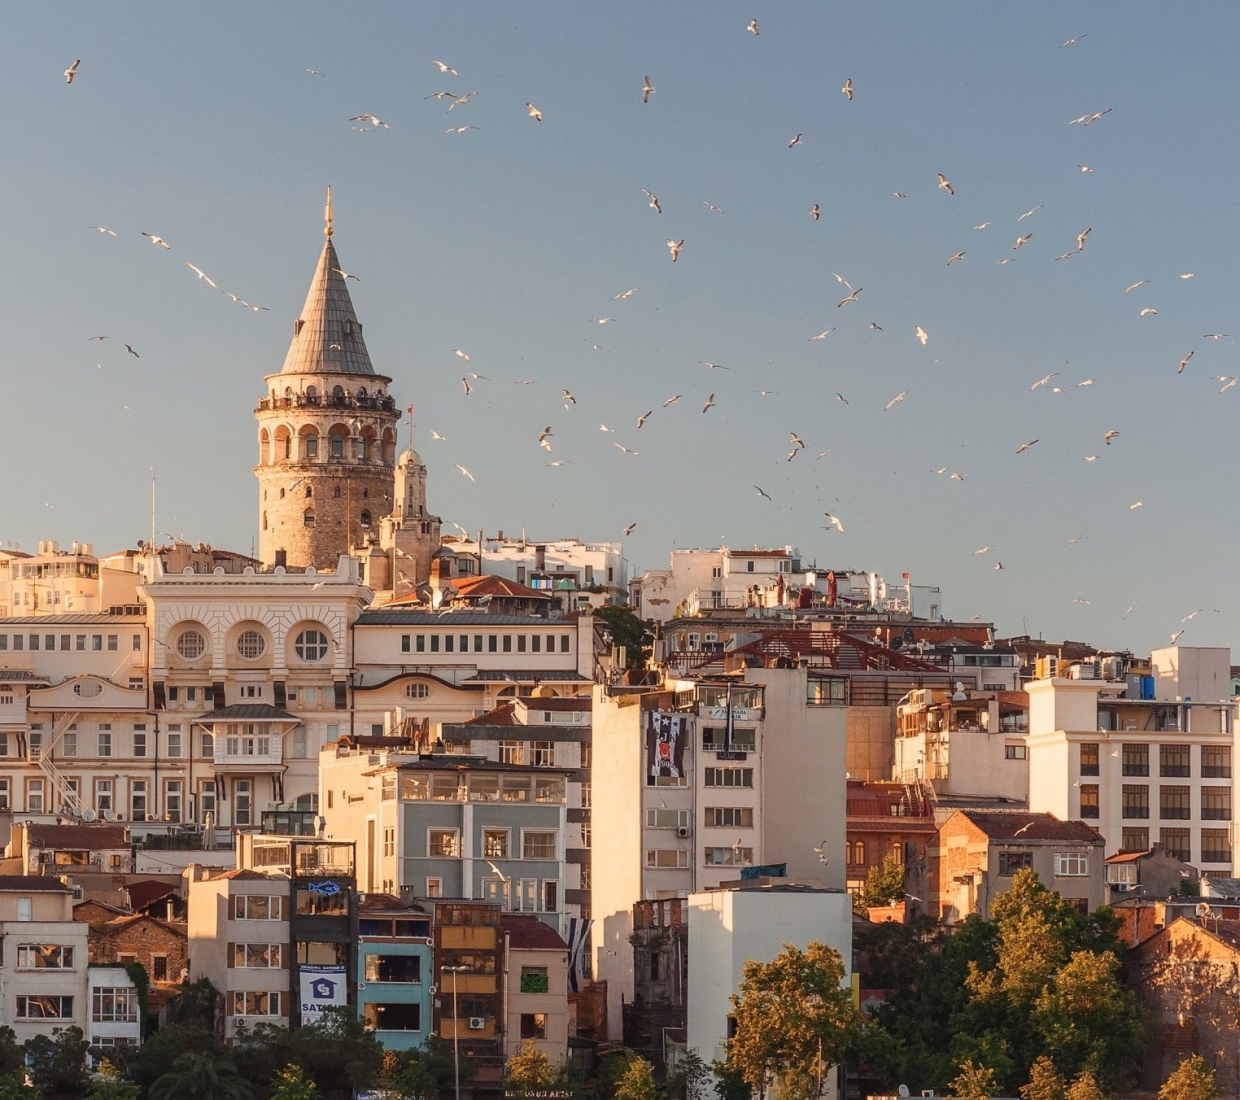 Seleção dos melhores e mais bonitos hotéis e casas de férias em Istambul